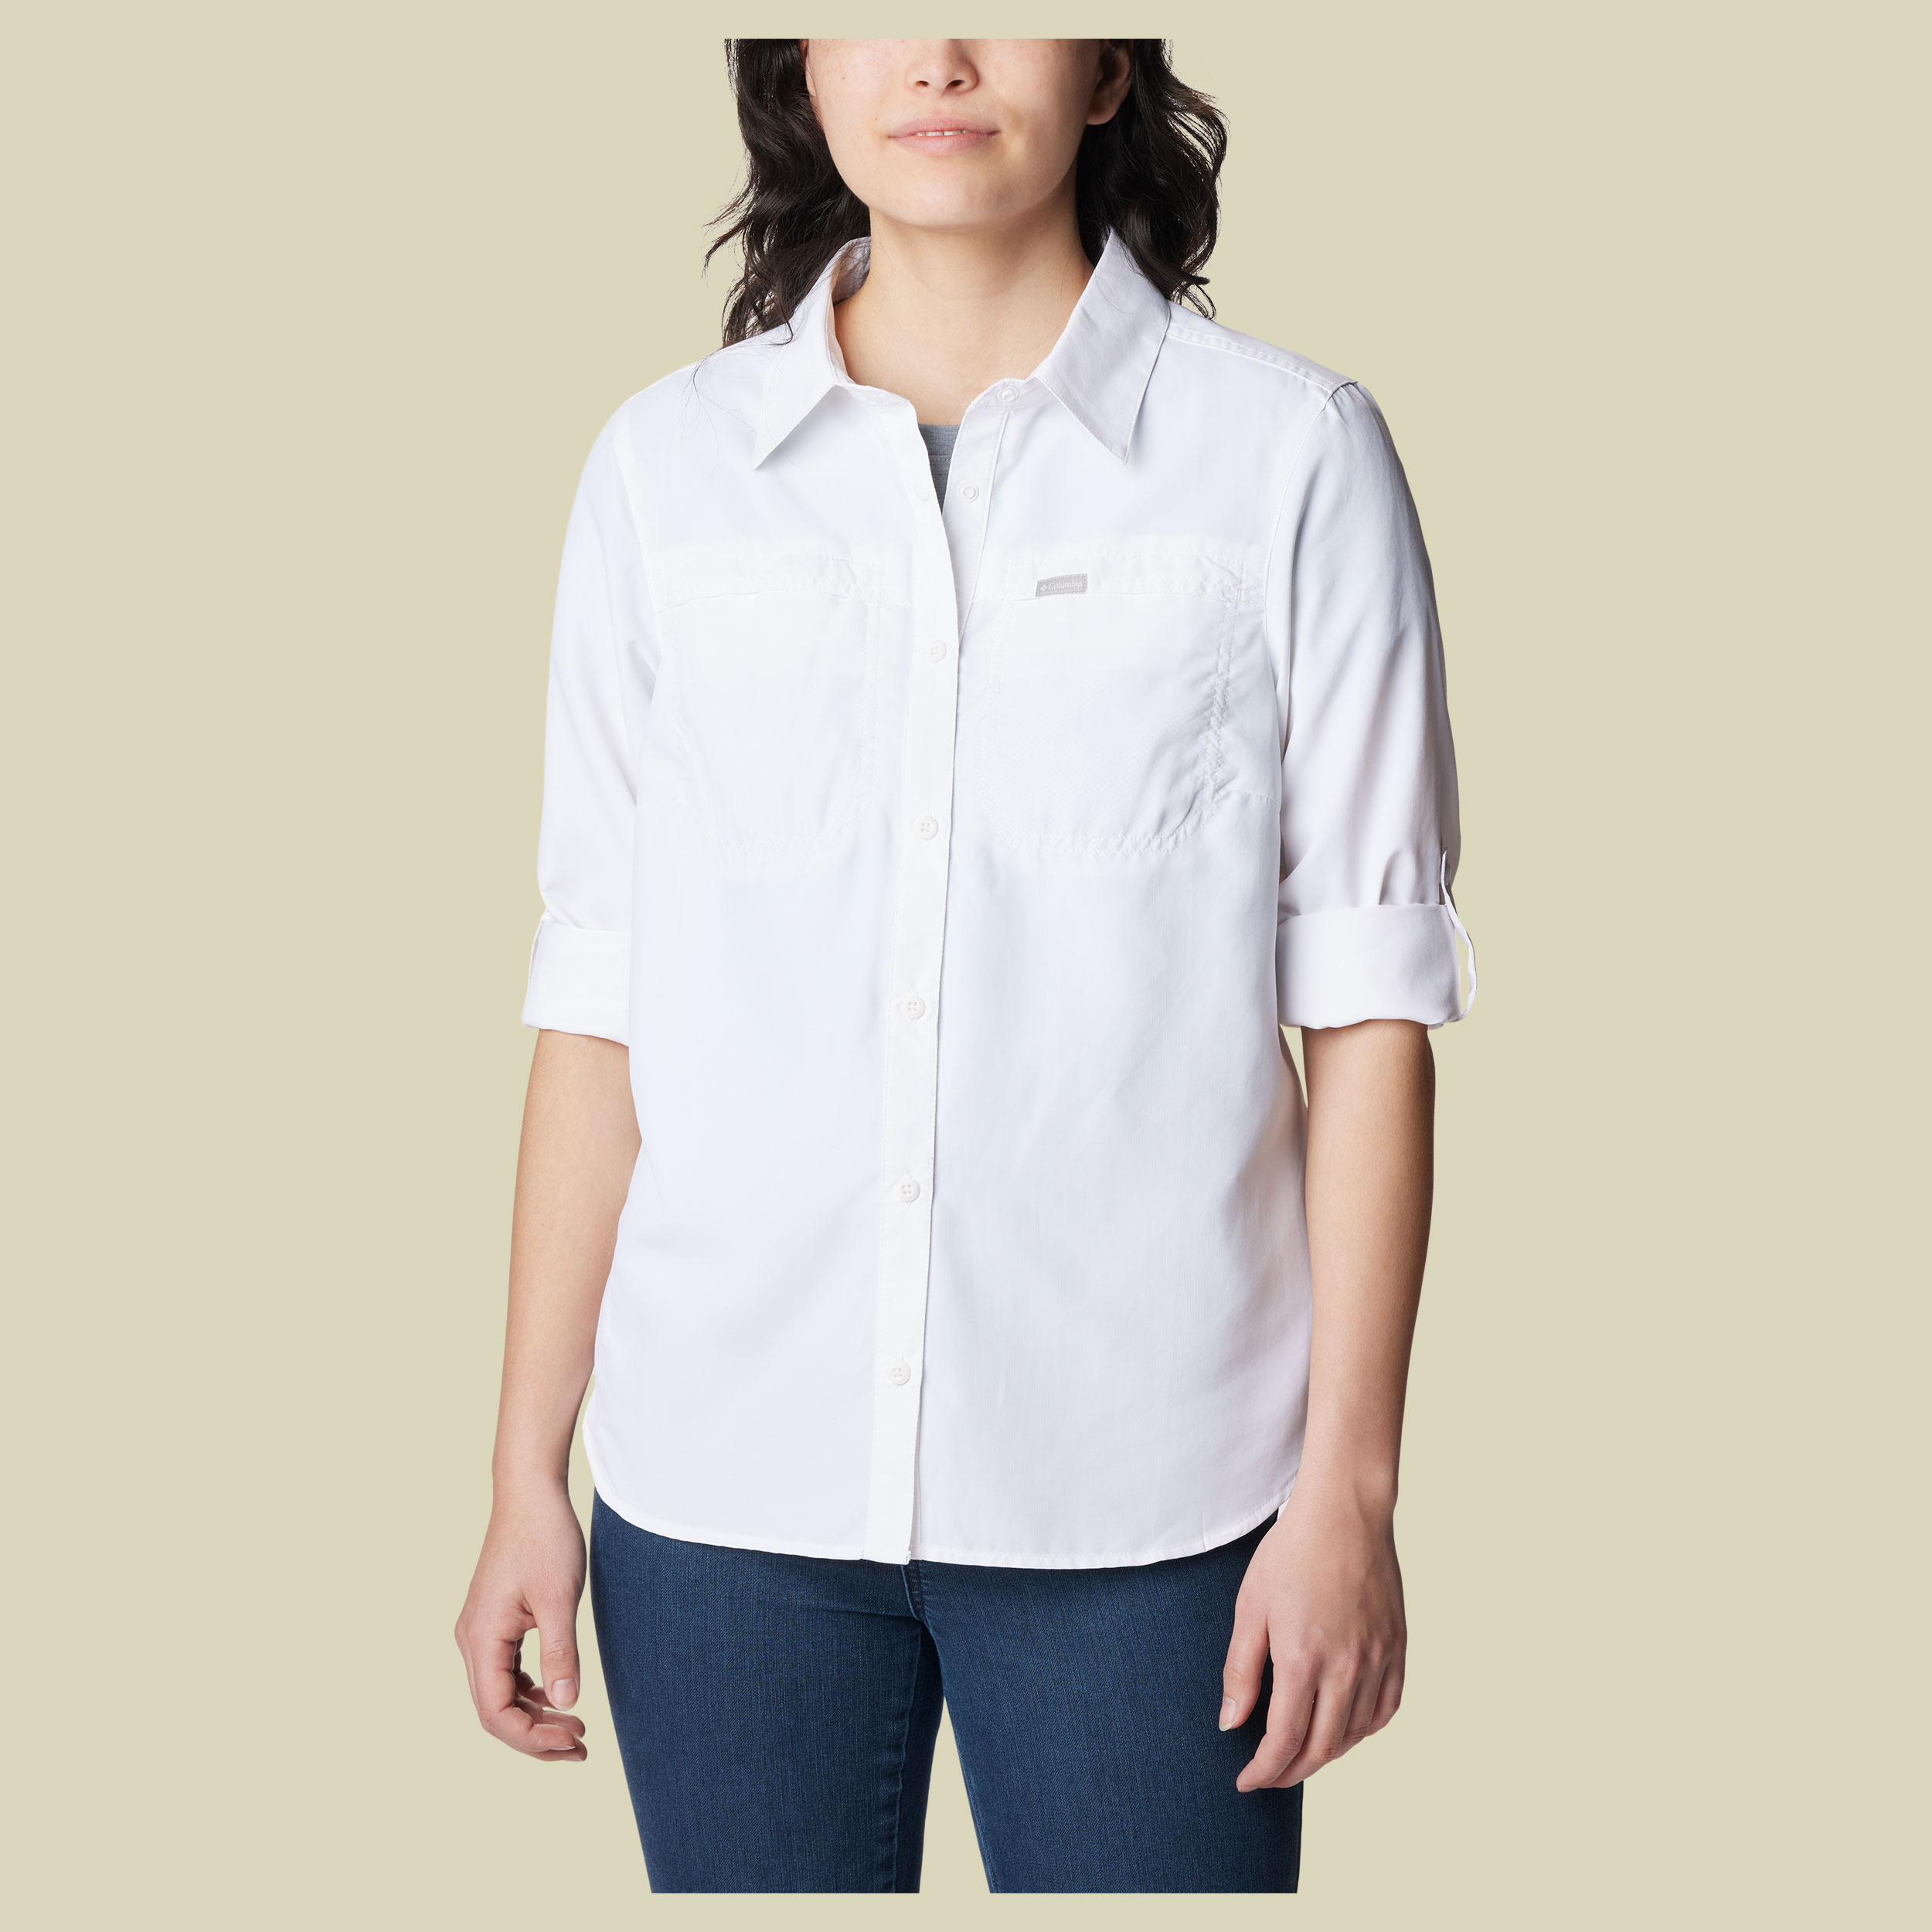 Silver Ridge 3.0 EUR Long Sleeve Shirt Women Größe L  Farbe white